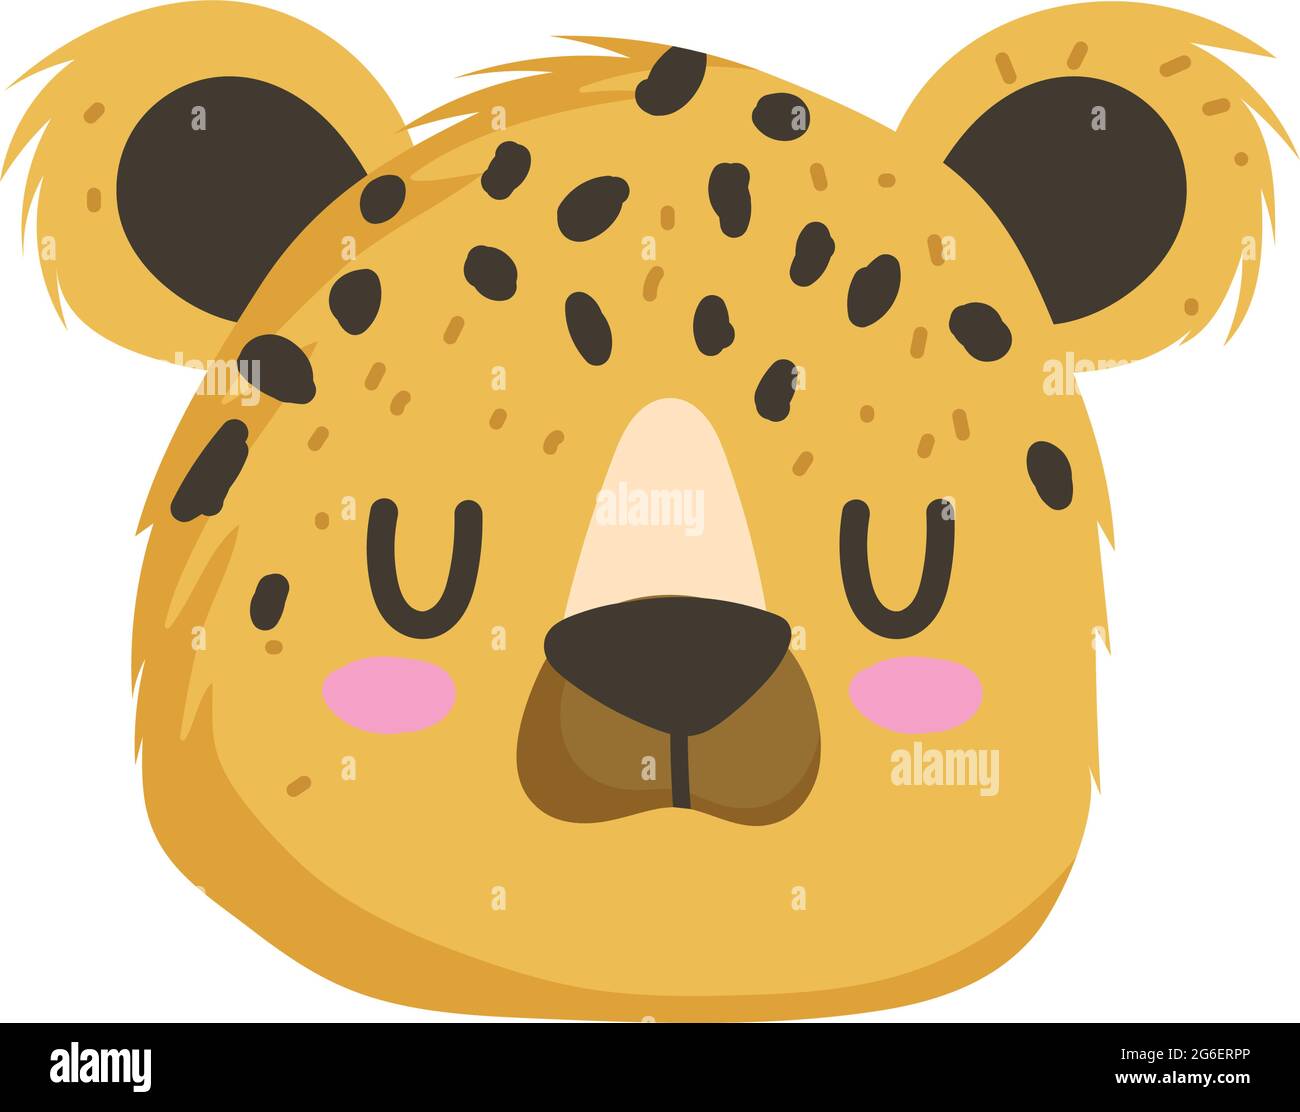 leopard face cartoon Stock Vector Image & Art - Alamy